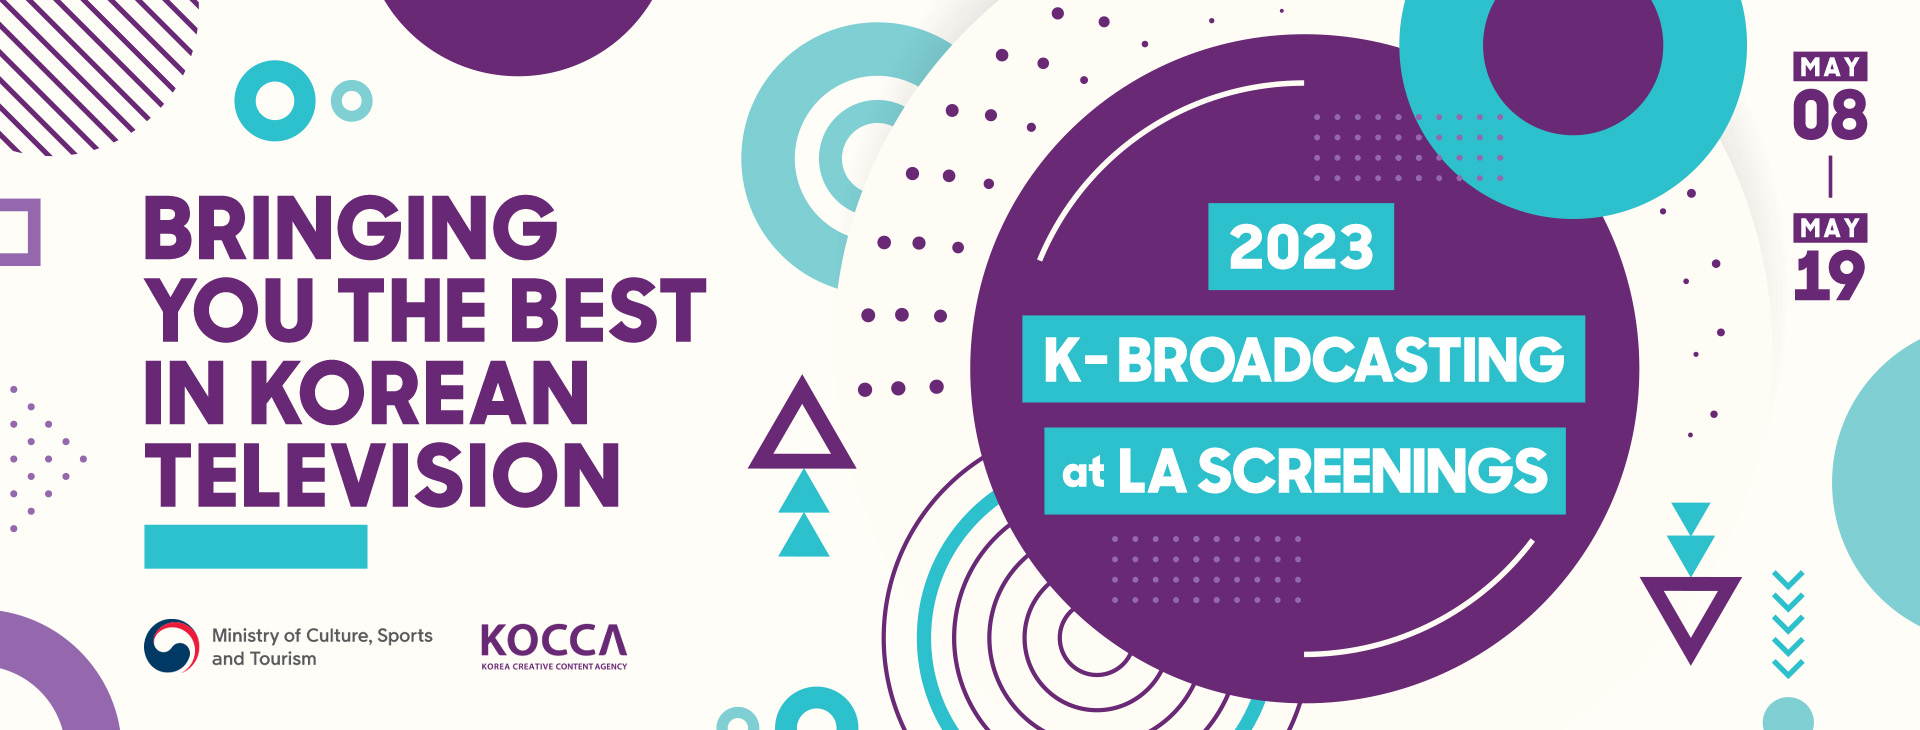 2023 K-Broadcasting at LA Screenings